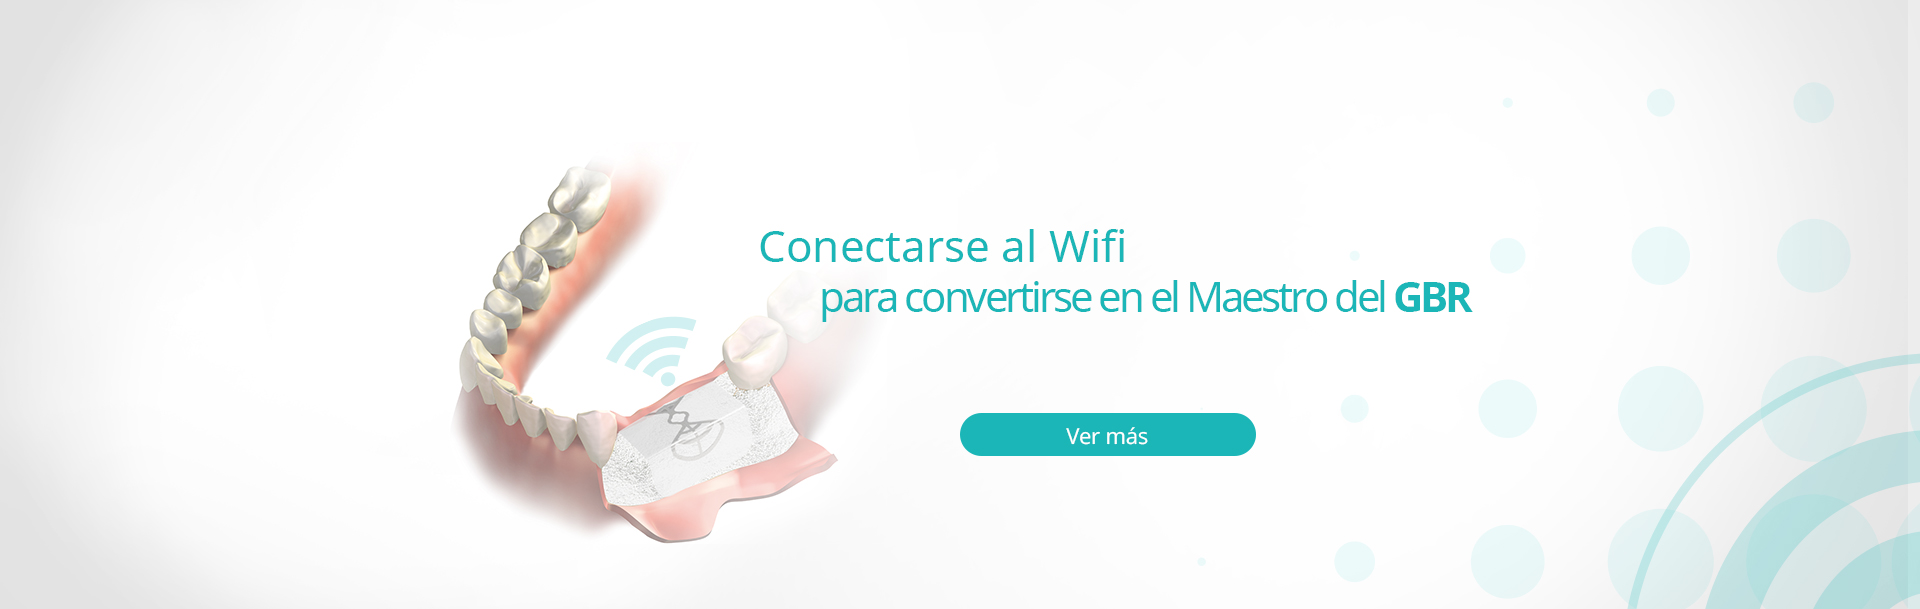 InnoGenic™ Wifi-mesh